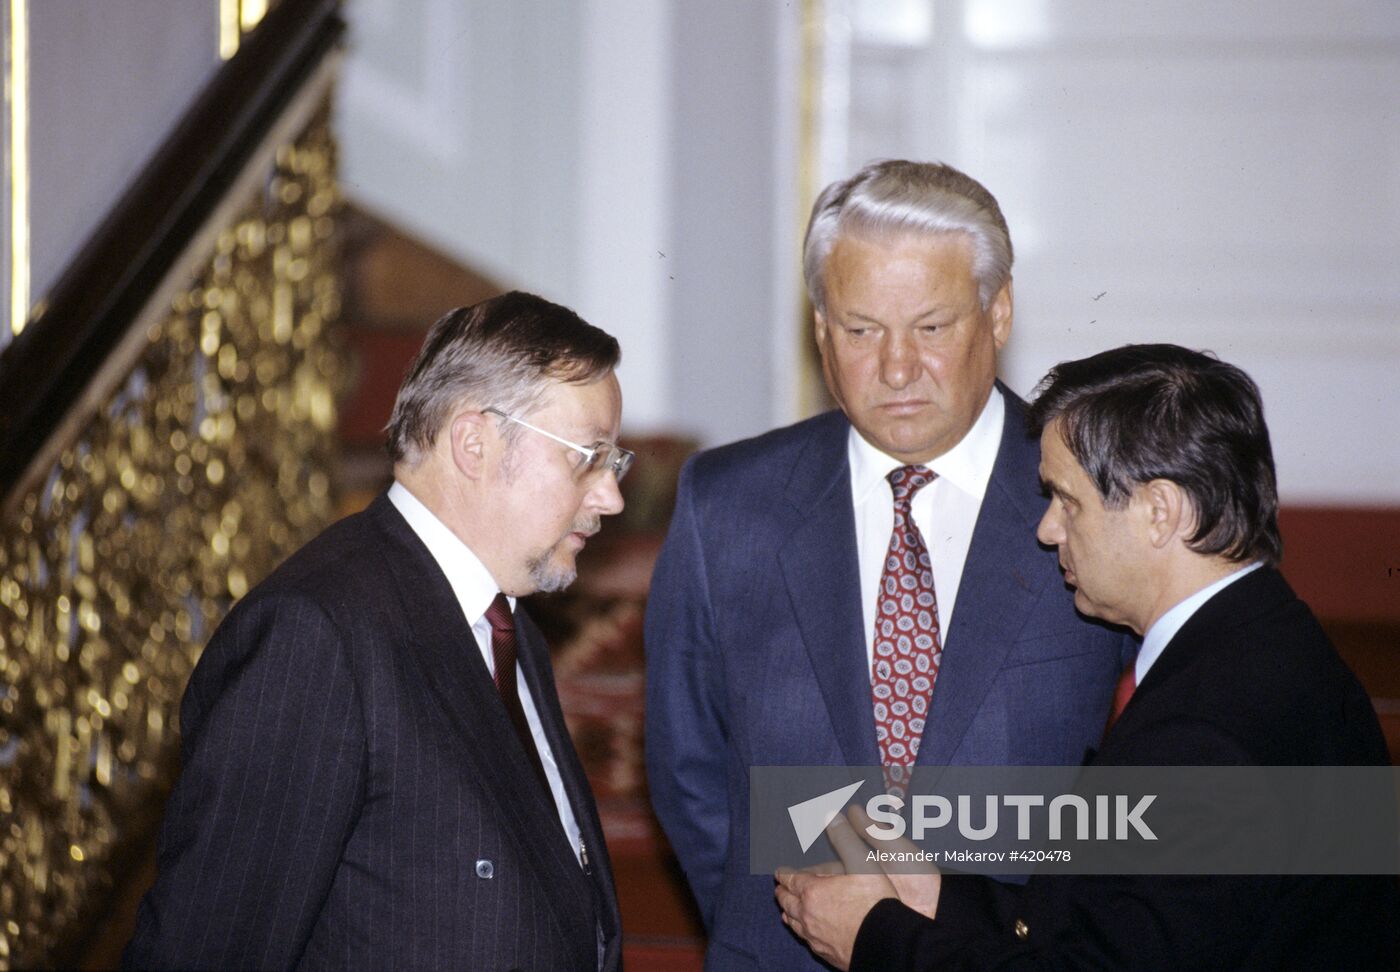 Boris Yeltsin, Vitautas Landsbergis, and Ruslan Khasbulatov